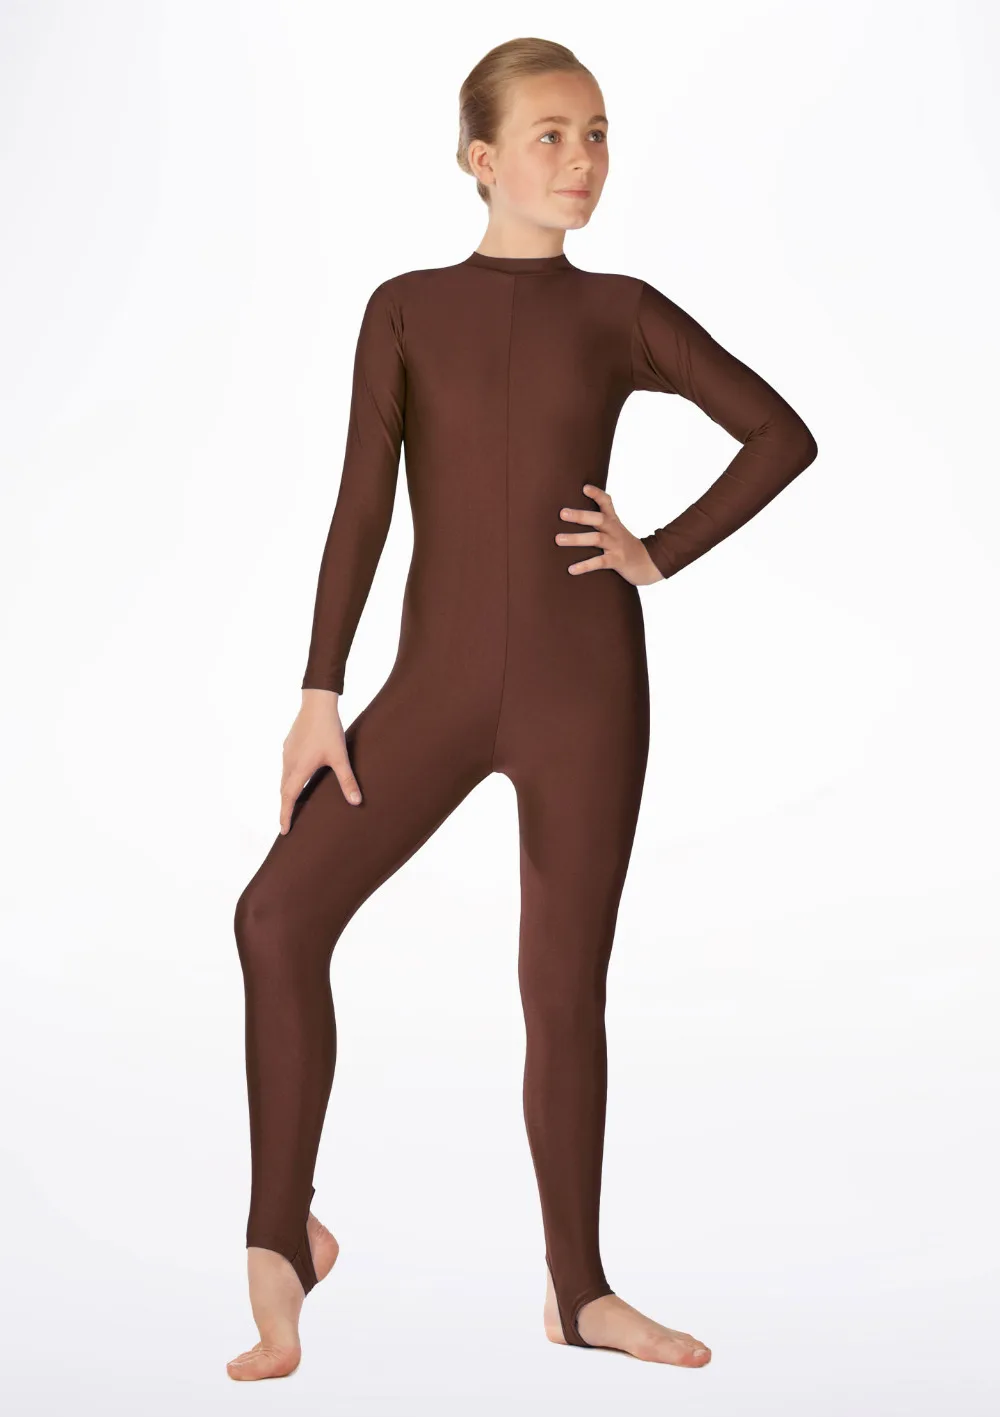 Icostumes женские, 1 штука Unitard костюм во весь рост лайкра спандекс колготки телесного цвета танец Unitard justaucorps Unitardo